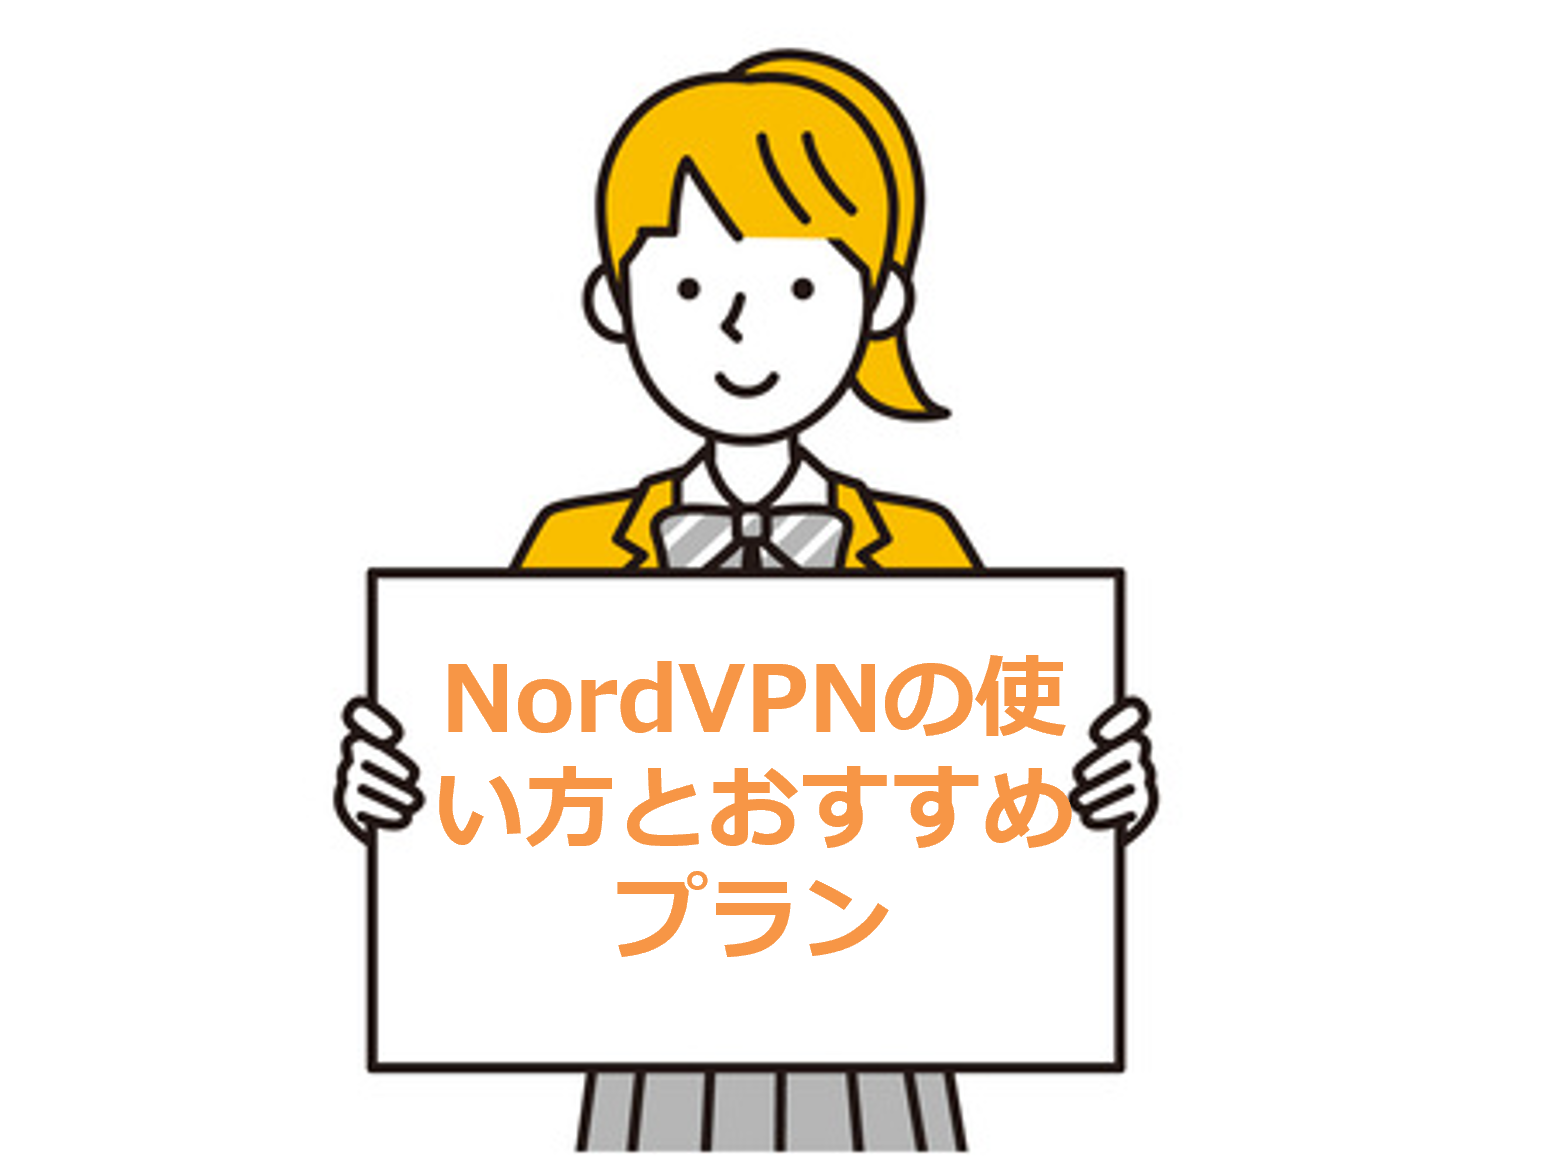 NordVPNの使い方とおすすめプラン